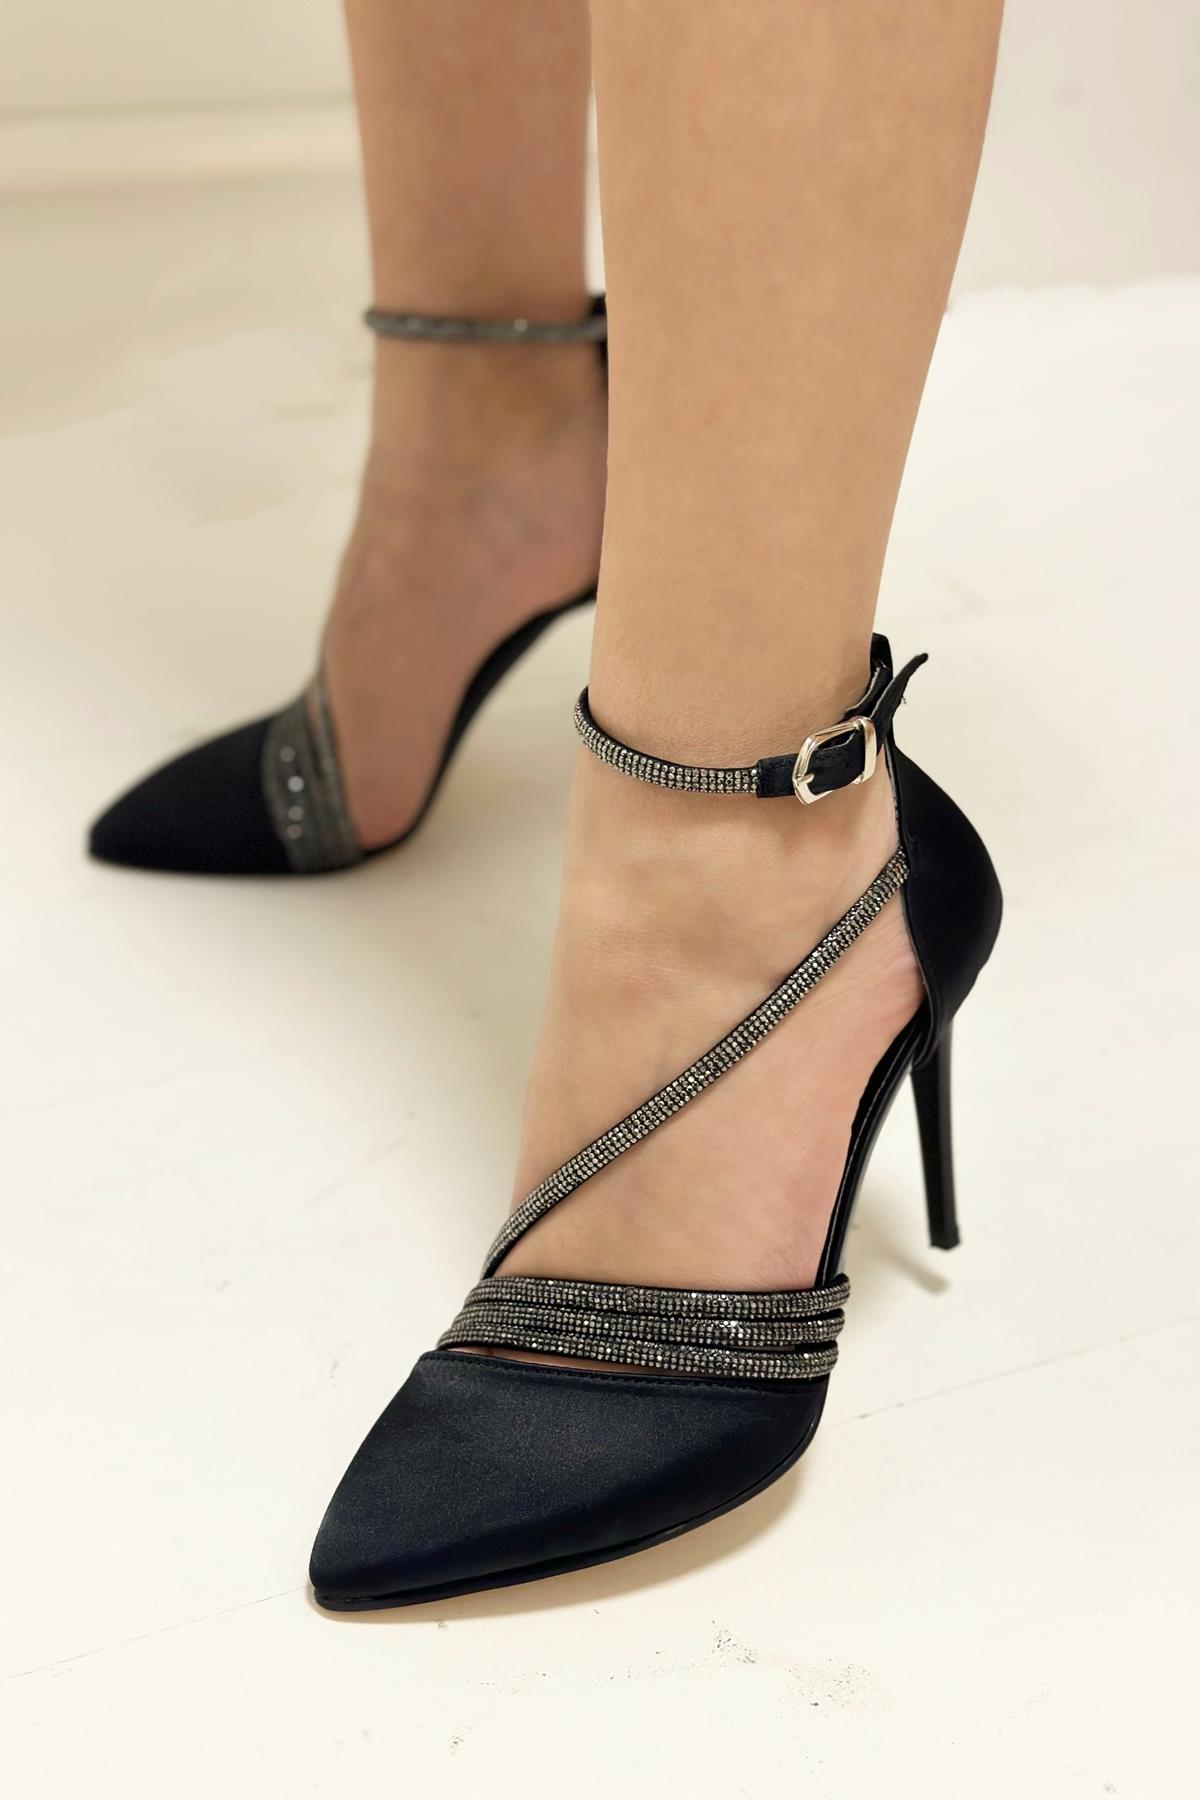 Tanis Siyah Saten Bilekten Bağlamalı Taşlı Topuklu Ayakkabı - Nilshoes